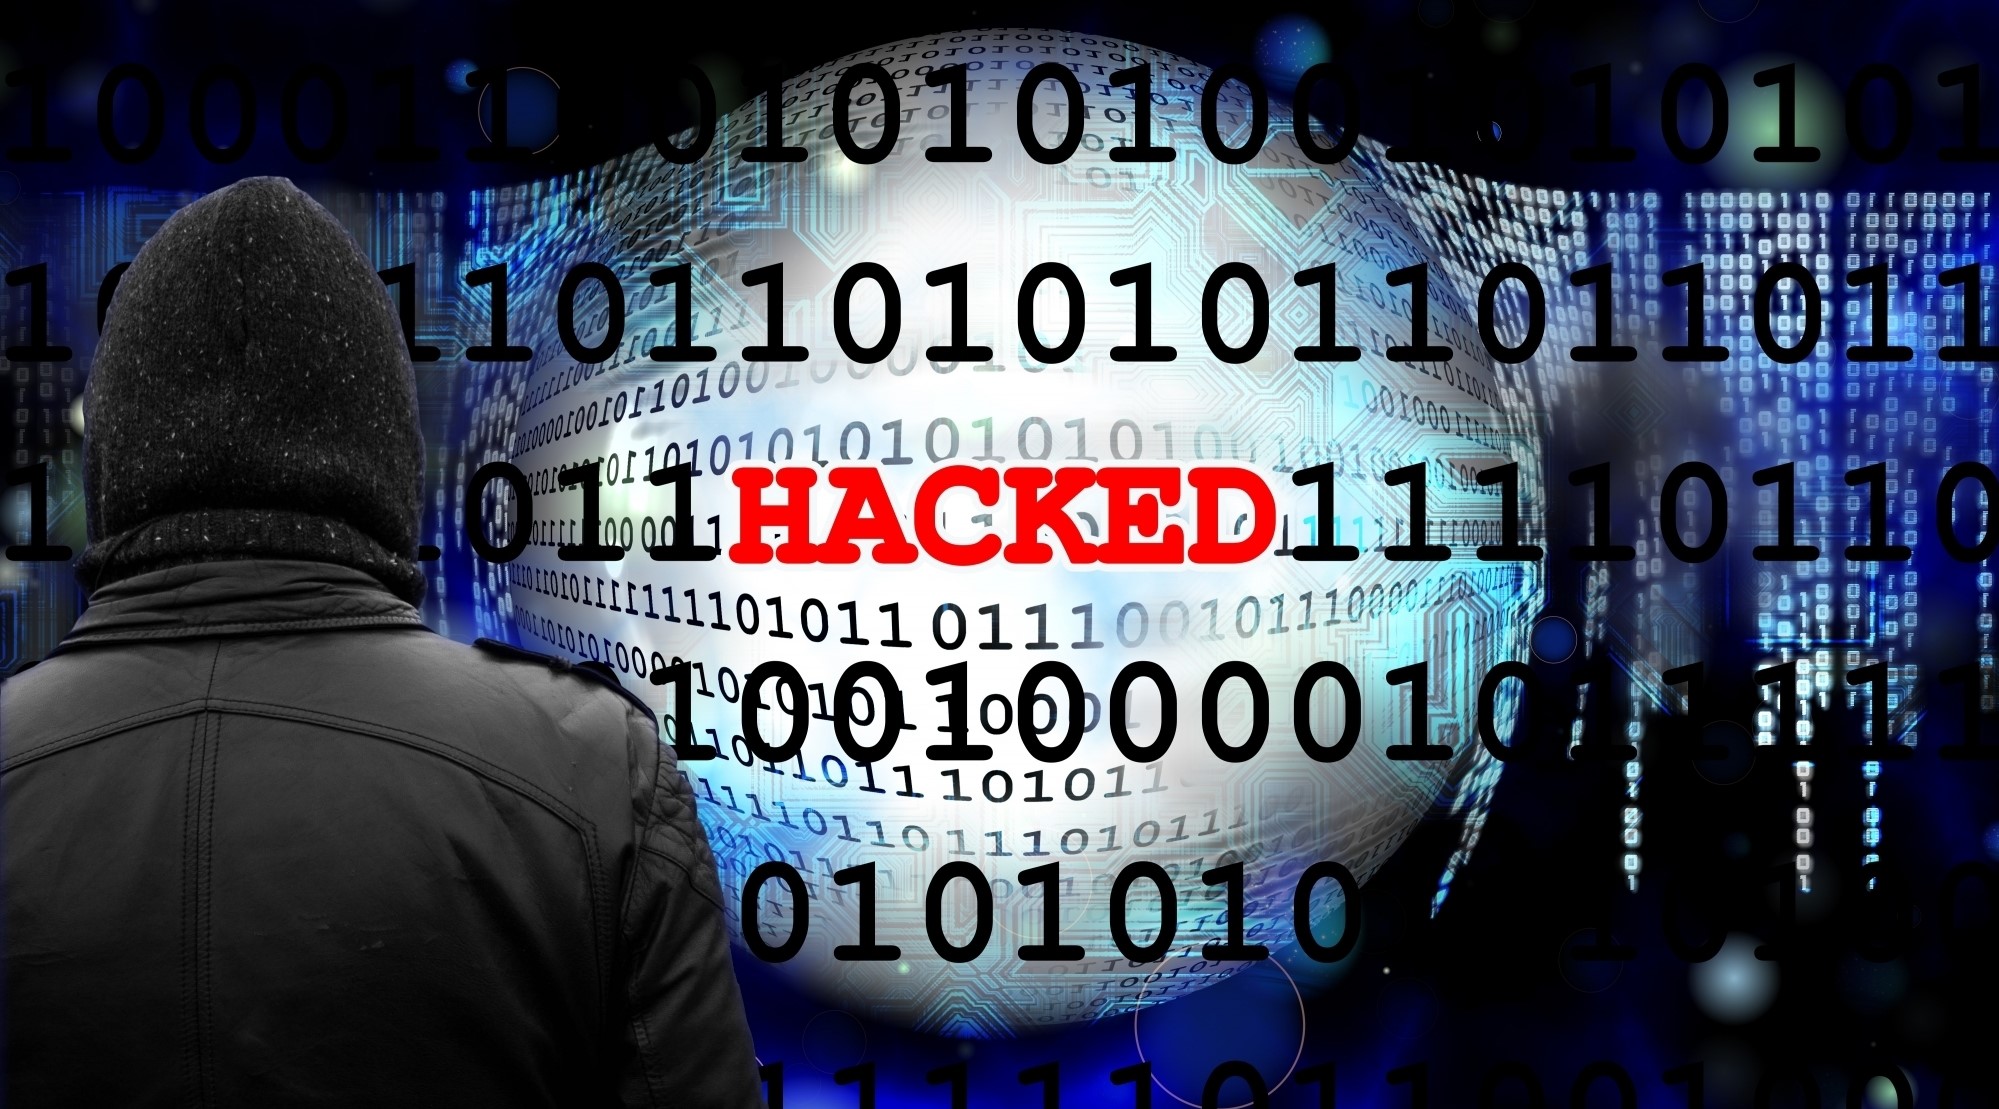 Hackers attacked Gujarat Congress website, uploaded Hardik Patel obscene photo